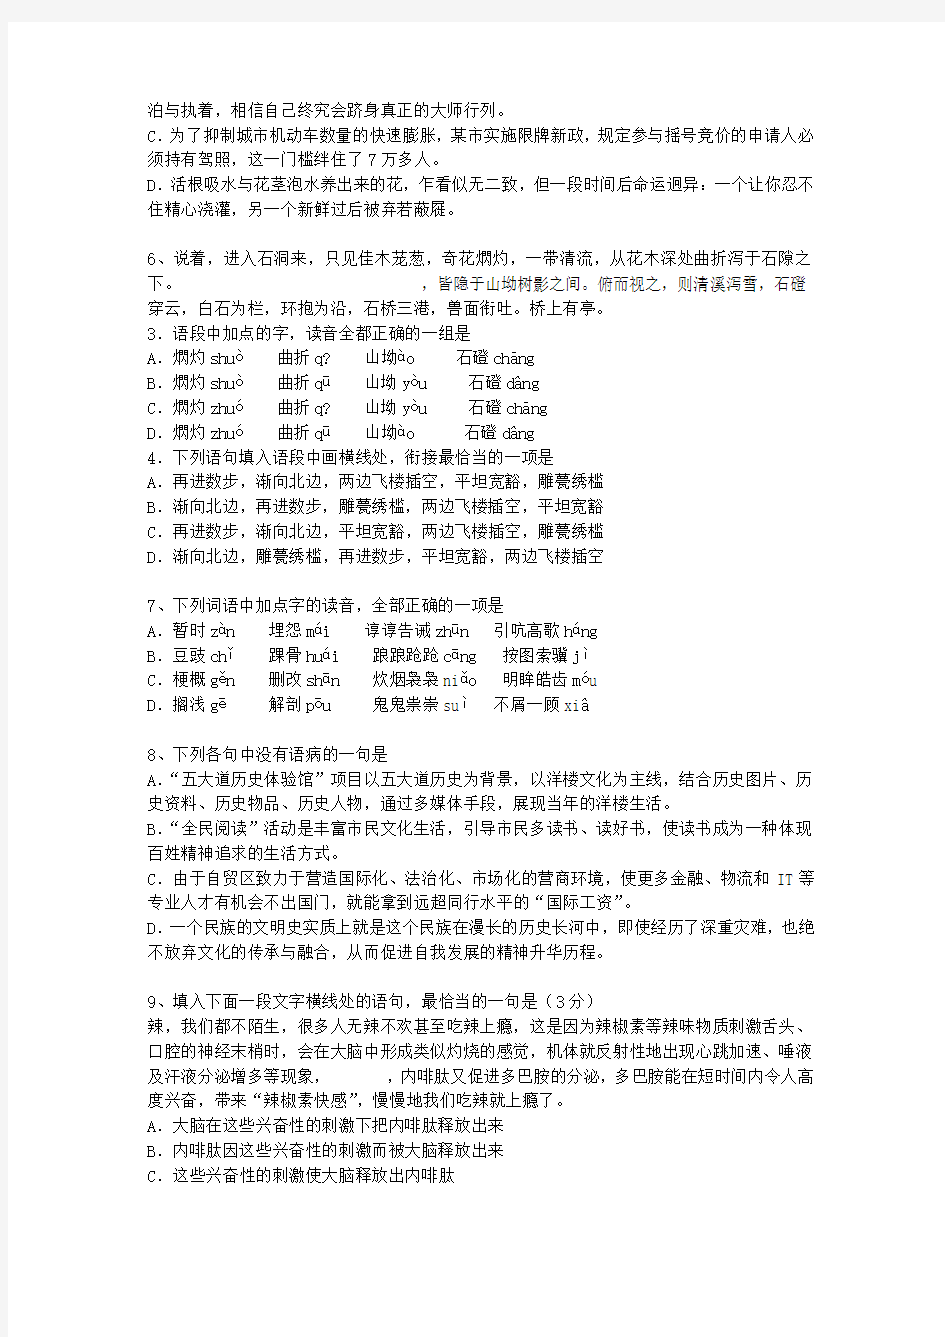 2014贵州省高考语文试卷及答案最新考试题库(完整版)_图文